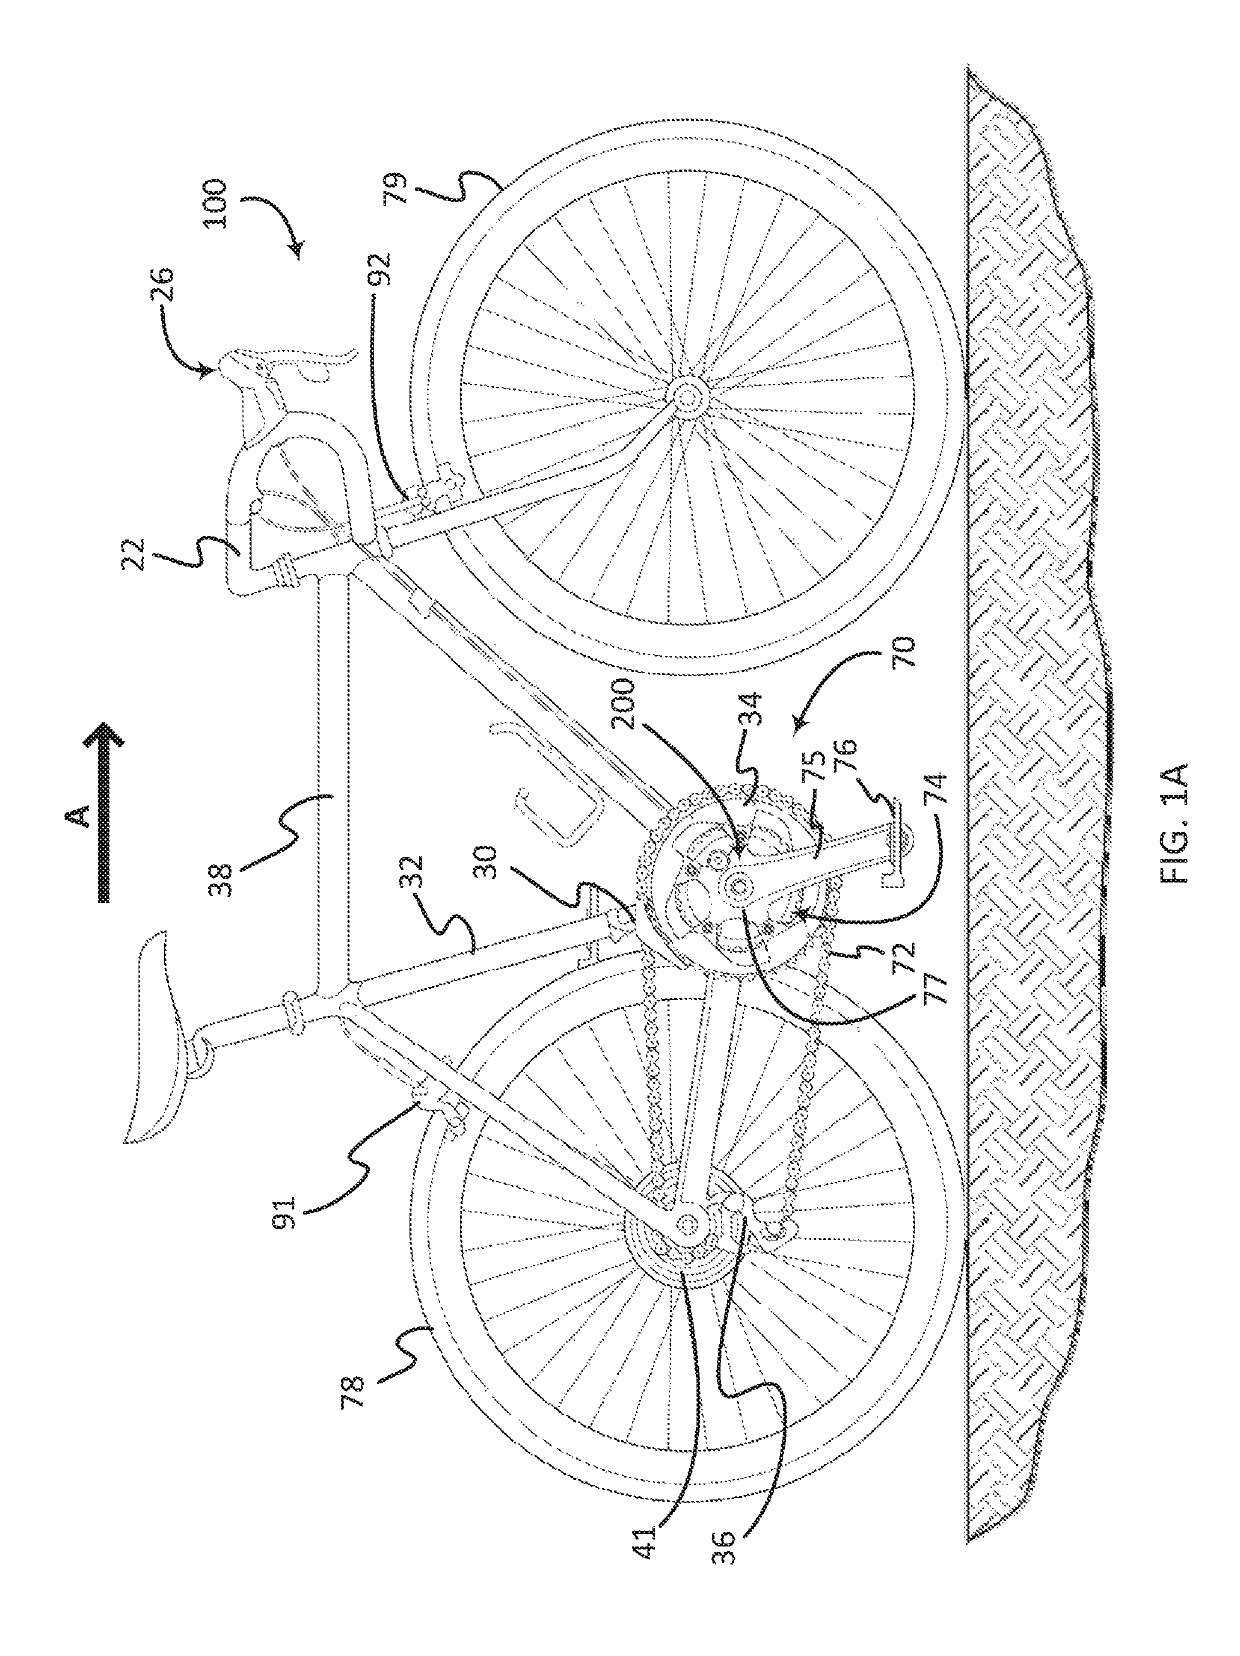 Bicycle power meter